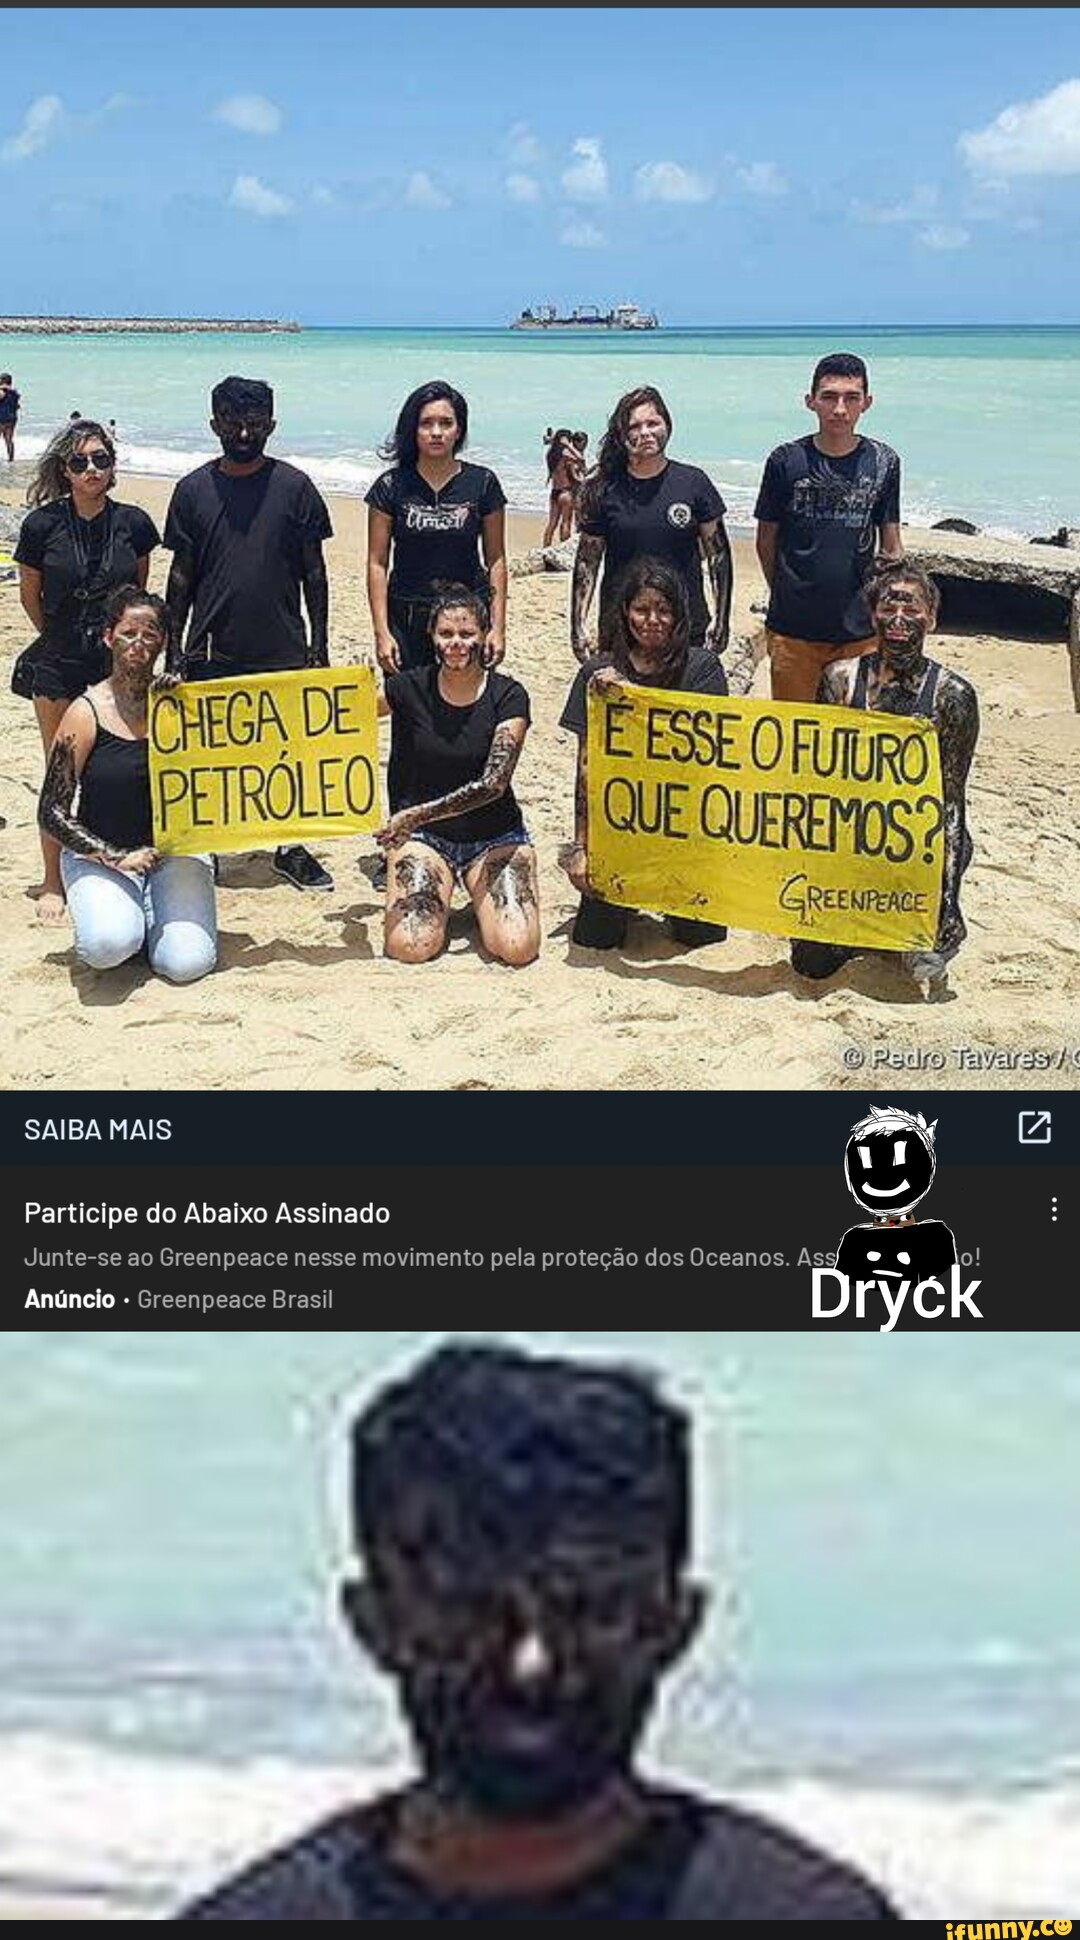 Memes de imagem pqElCXKE7 por Freesdo_2017: 13 comentários - iFunny Brazil